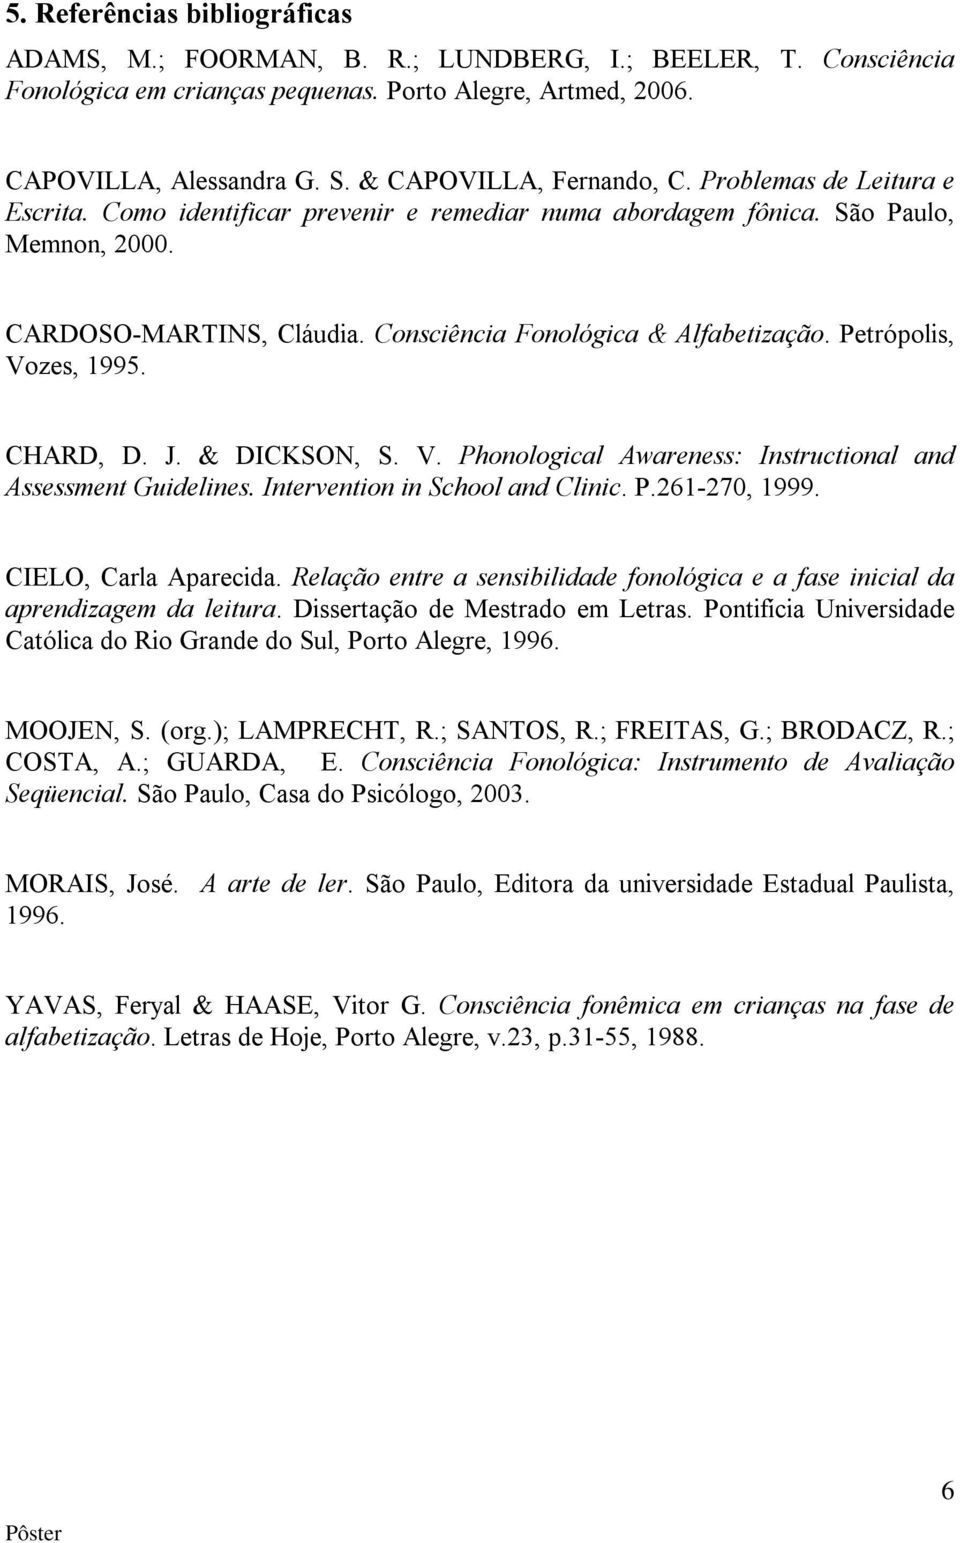 Consciência Fonológica & Alfabetização. Petrópolis, Vozes, 1995. CHARD, D. J. & DICKSON, S. V. Phonological Awareness: Instructional and Assessment Guidelines. Intervention in School and Clinic. P.261-270, 1999.